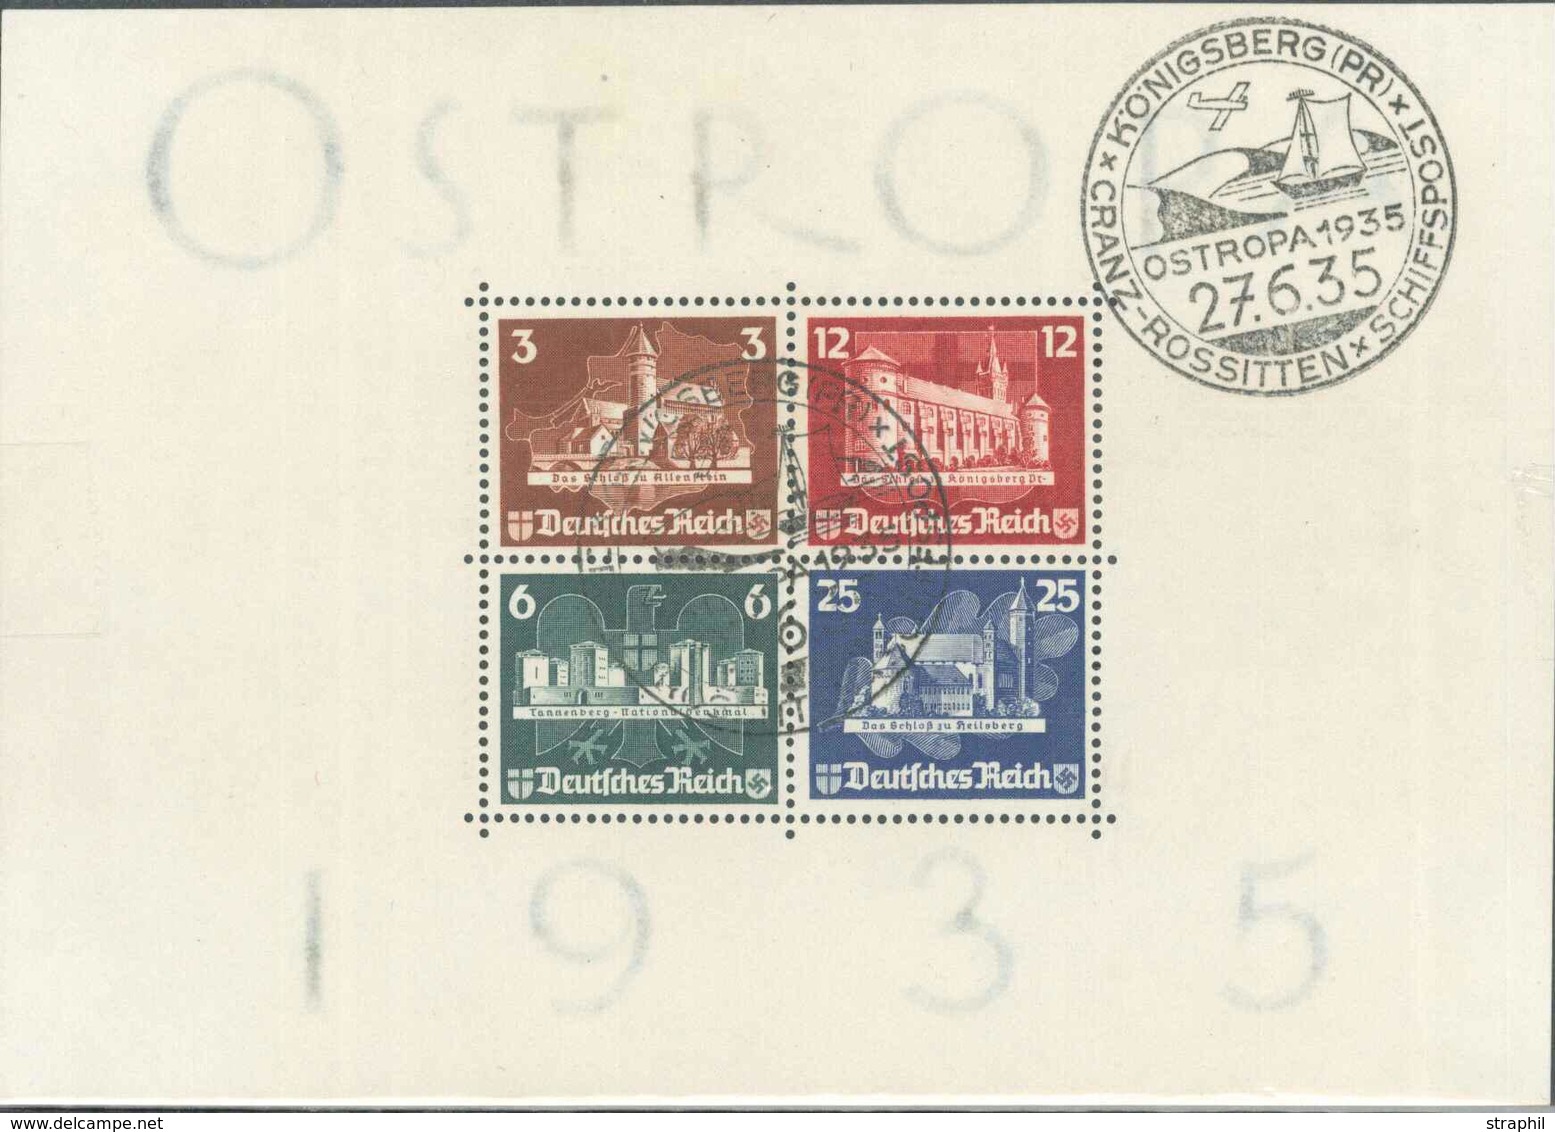 O ALLEMAGNE - BLOCS FEUILLETS - O - N°3 - OSTROPA 1935 - Obl Gd Cachet Illustré - Königsberg - 27/6/35 - TB - Blocks & Sheetlets